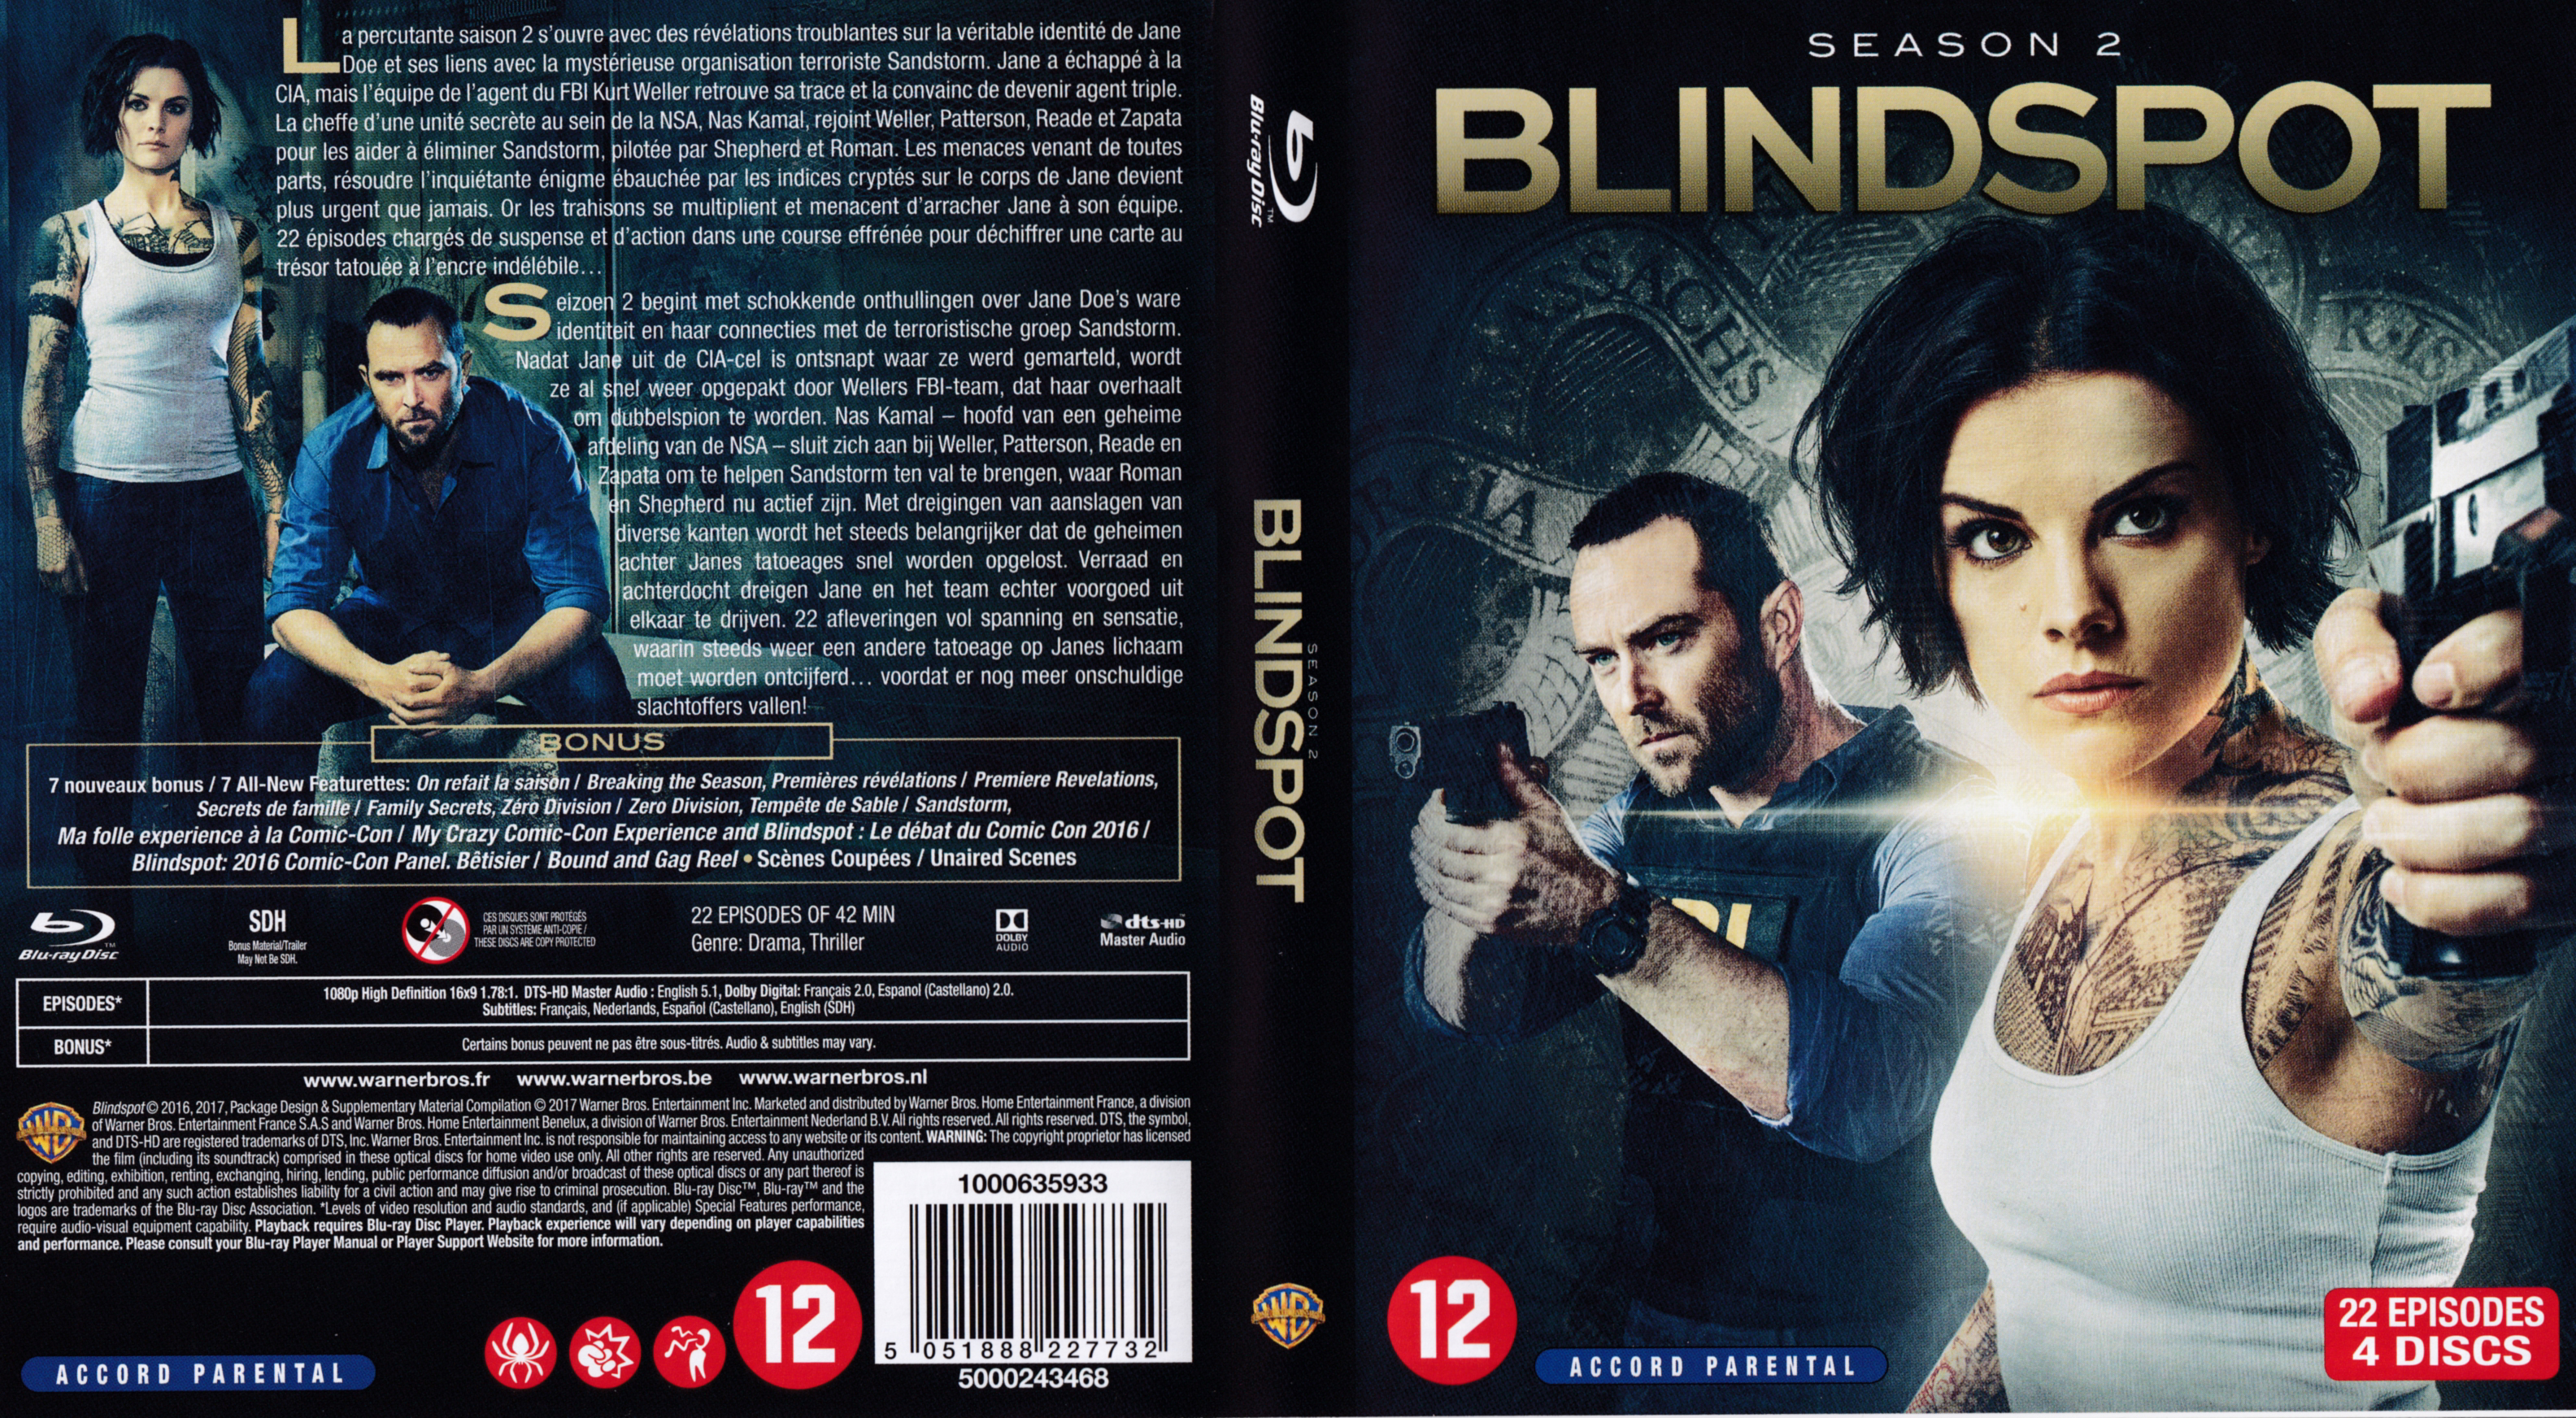 Jaquette DVD Blindspot saison 2 (BLU-RAY)